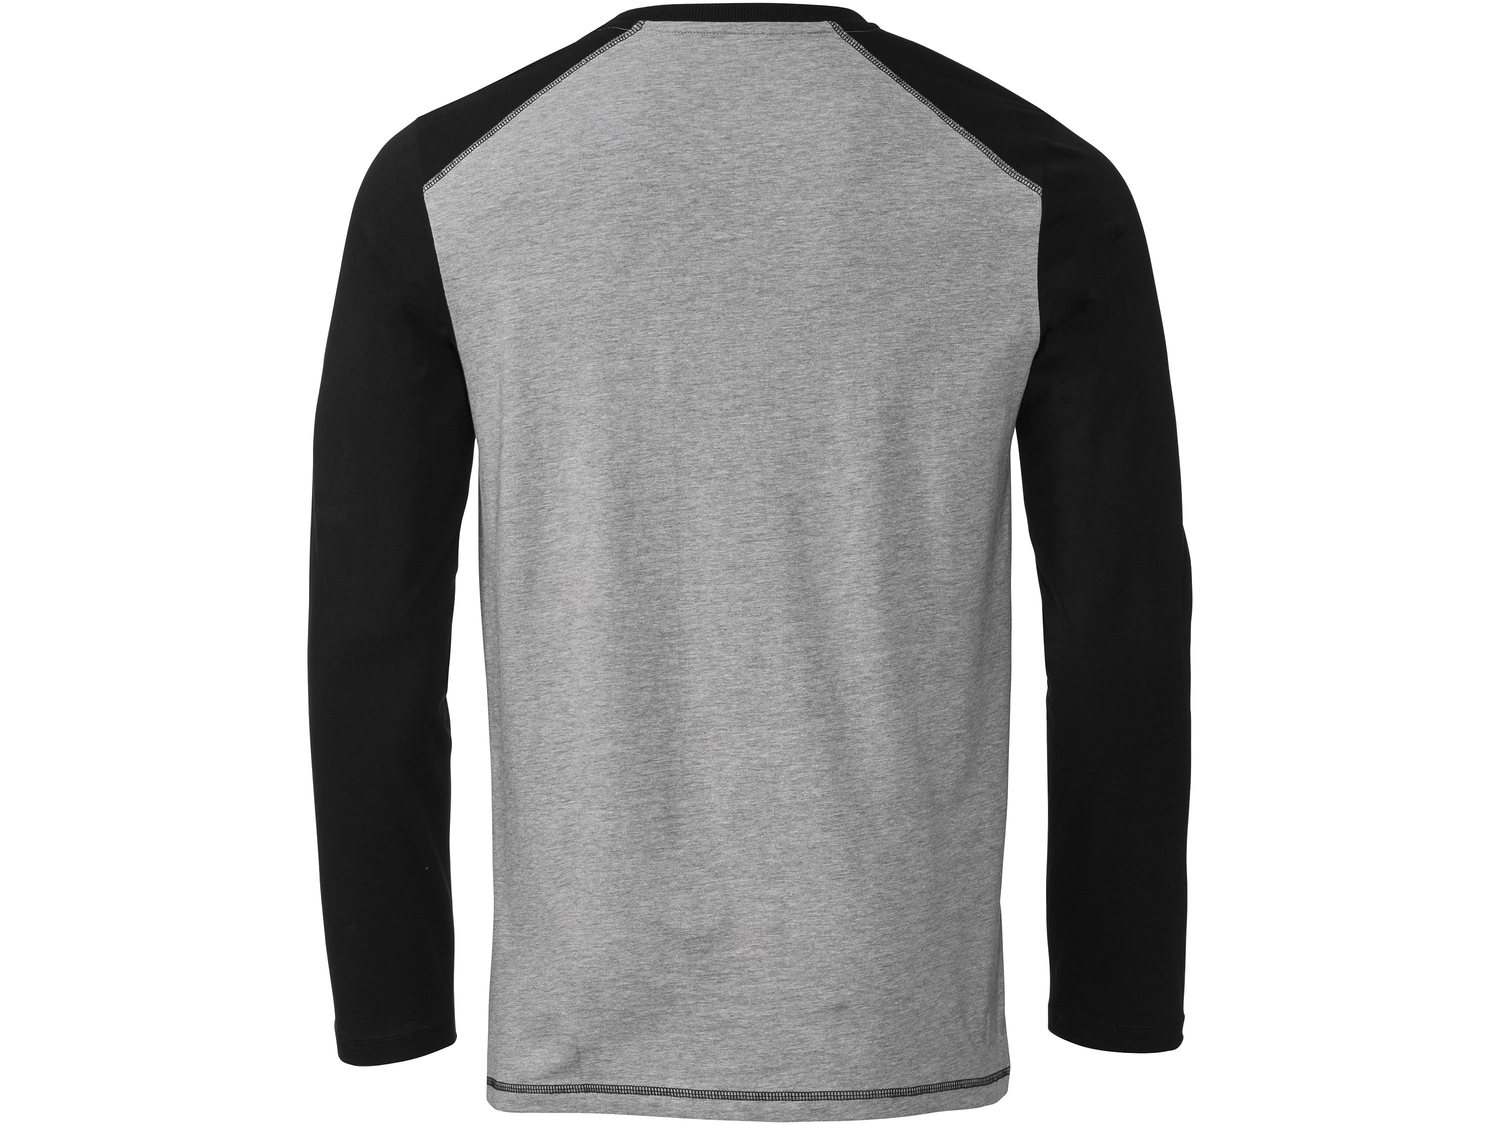 Koszulka Livergy, cena 22,99 PLN 
- wysoka zawartość bawełny
- rozmiary: M-XL
- ...